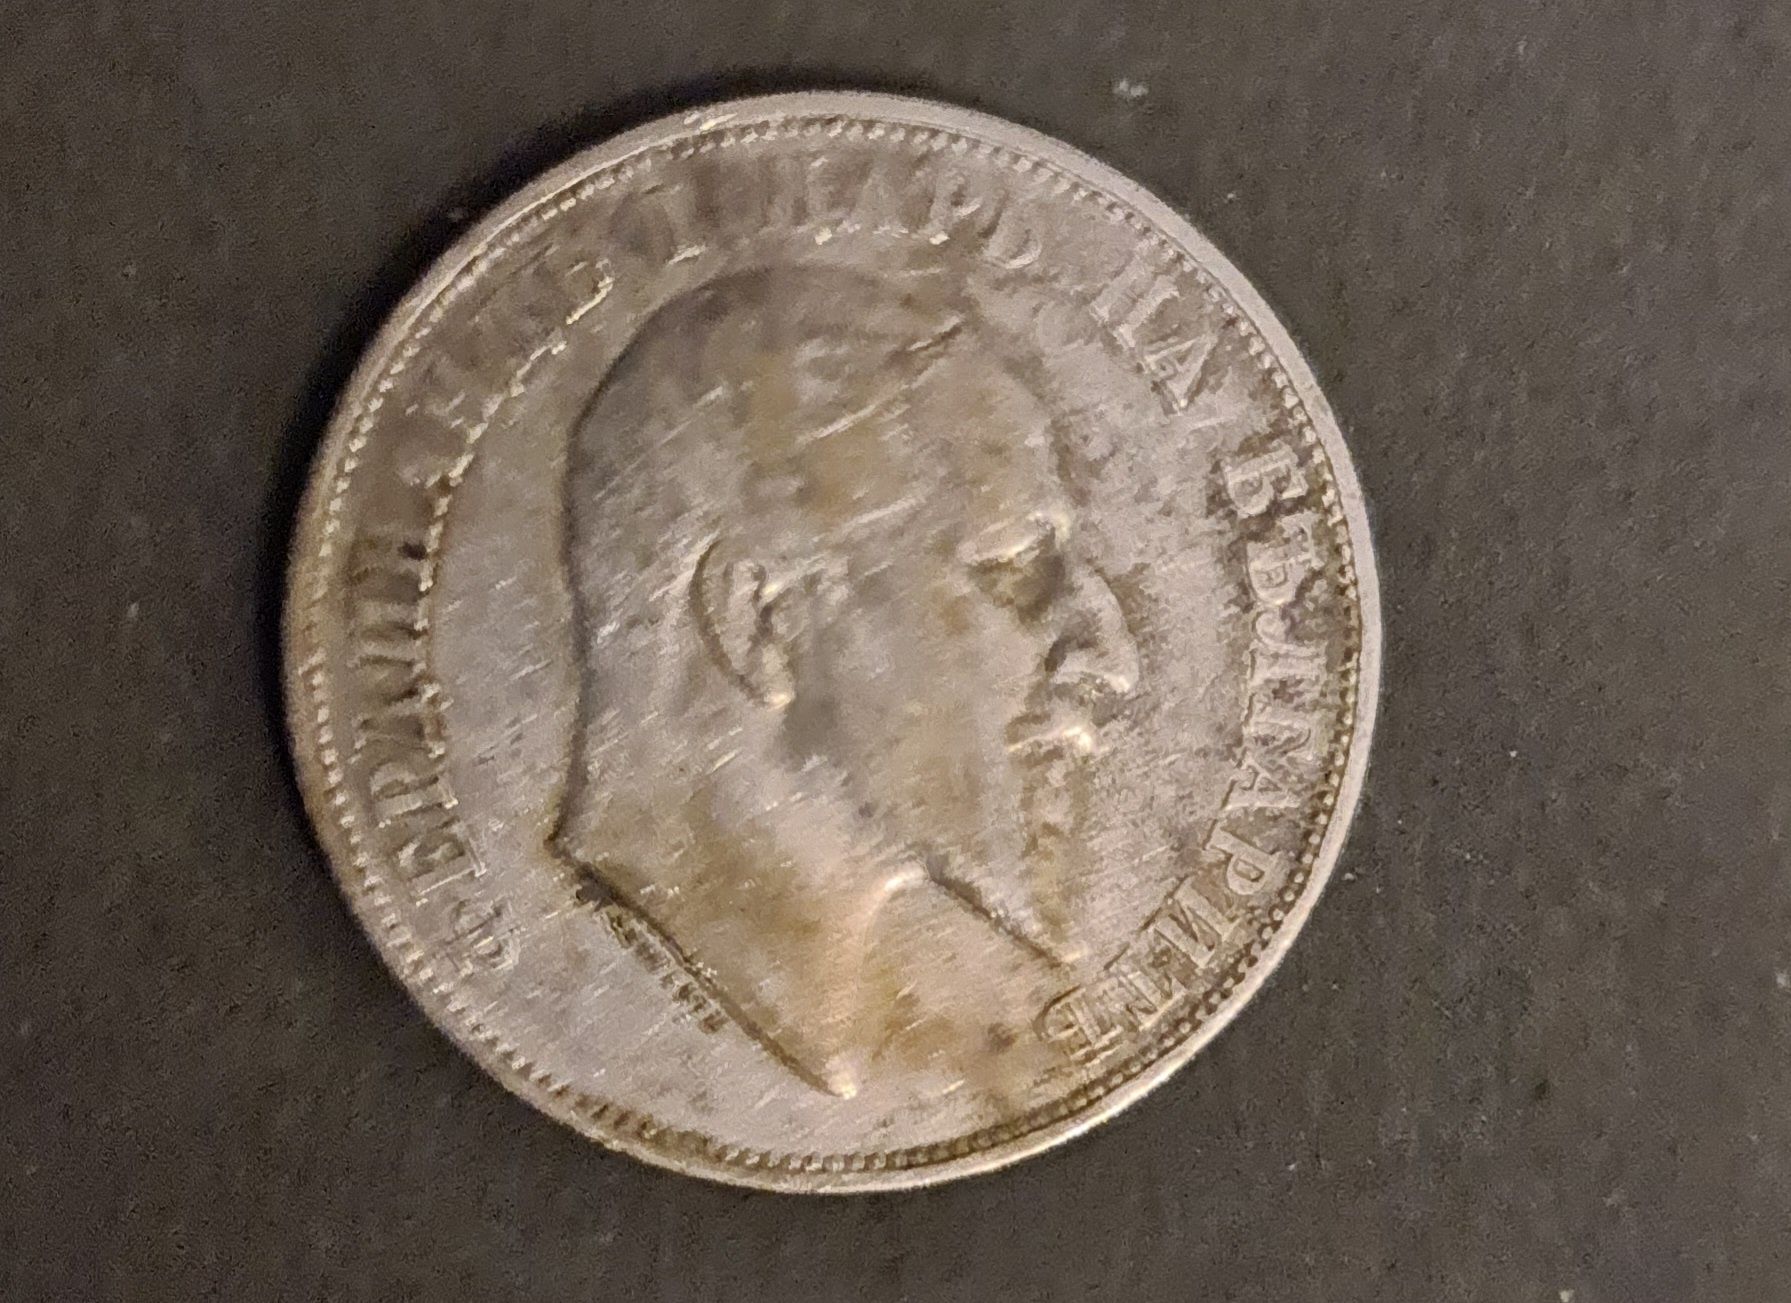 2 лева 1910 - сребро